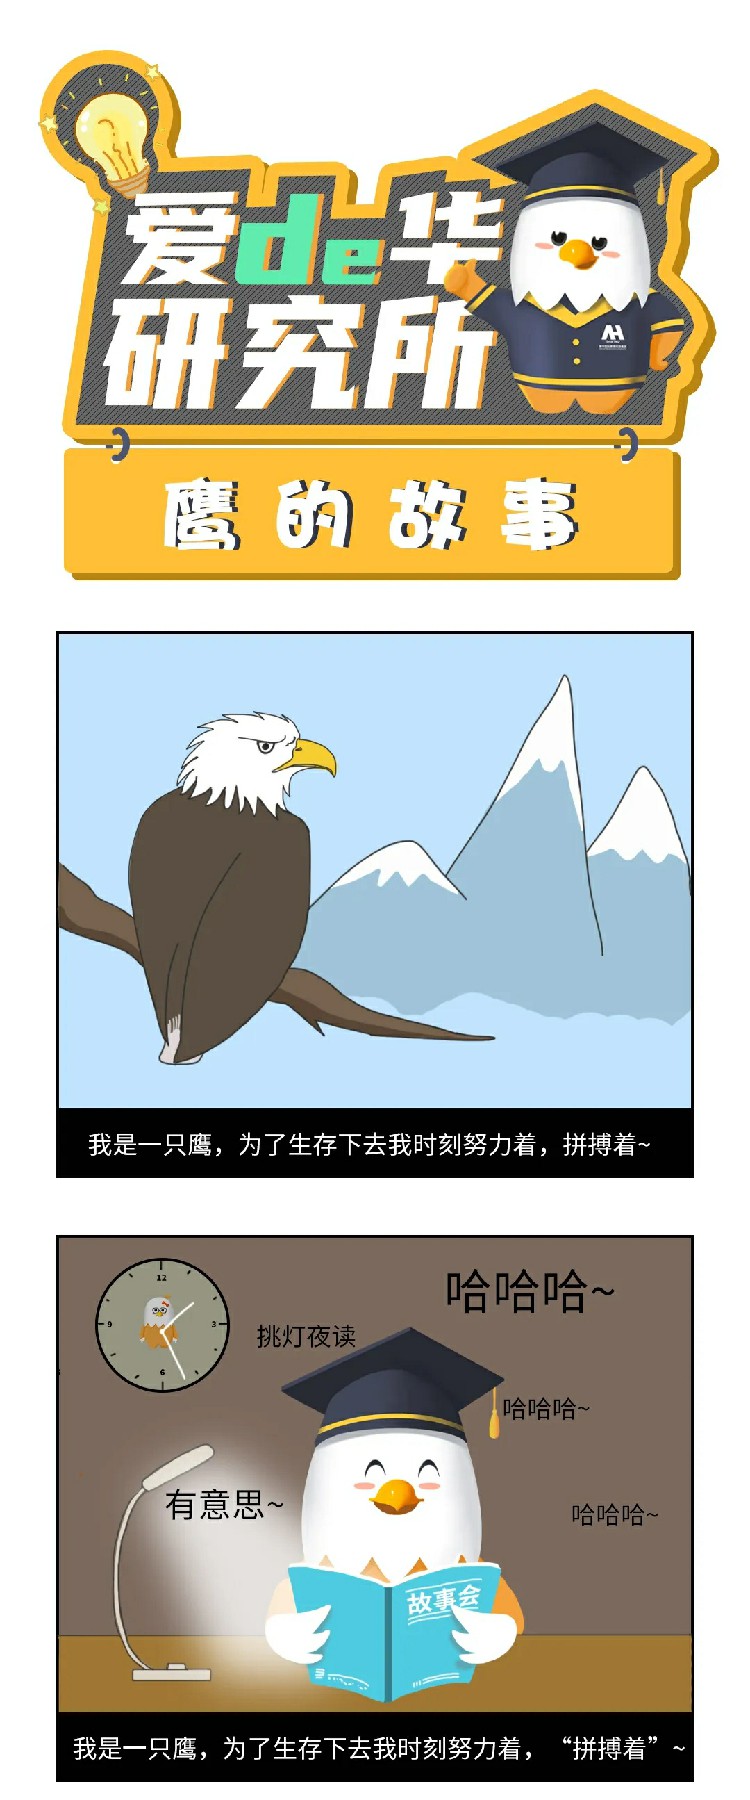 鷹的故事(shì)1.webp~1.jpg